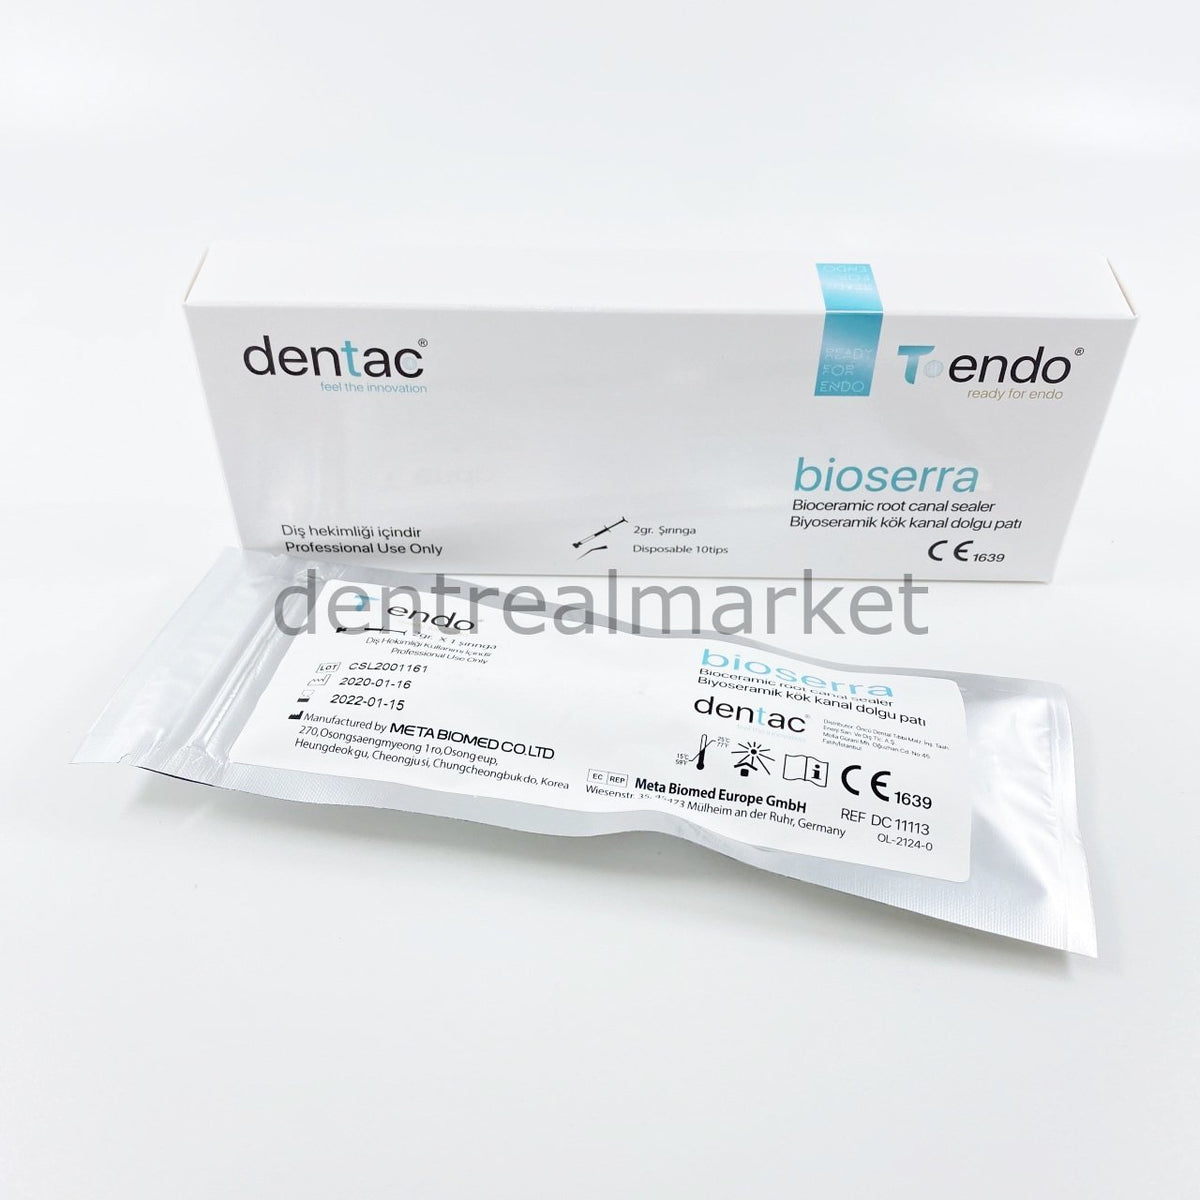 DentrealStore - Dentac Bioserra Based Root Canal Sealer - Calcium Silicate-Based Bioceramic Sealer